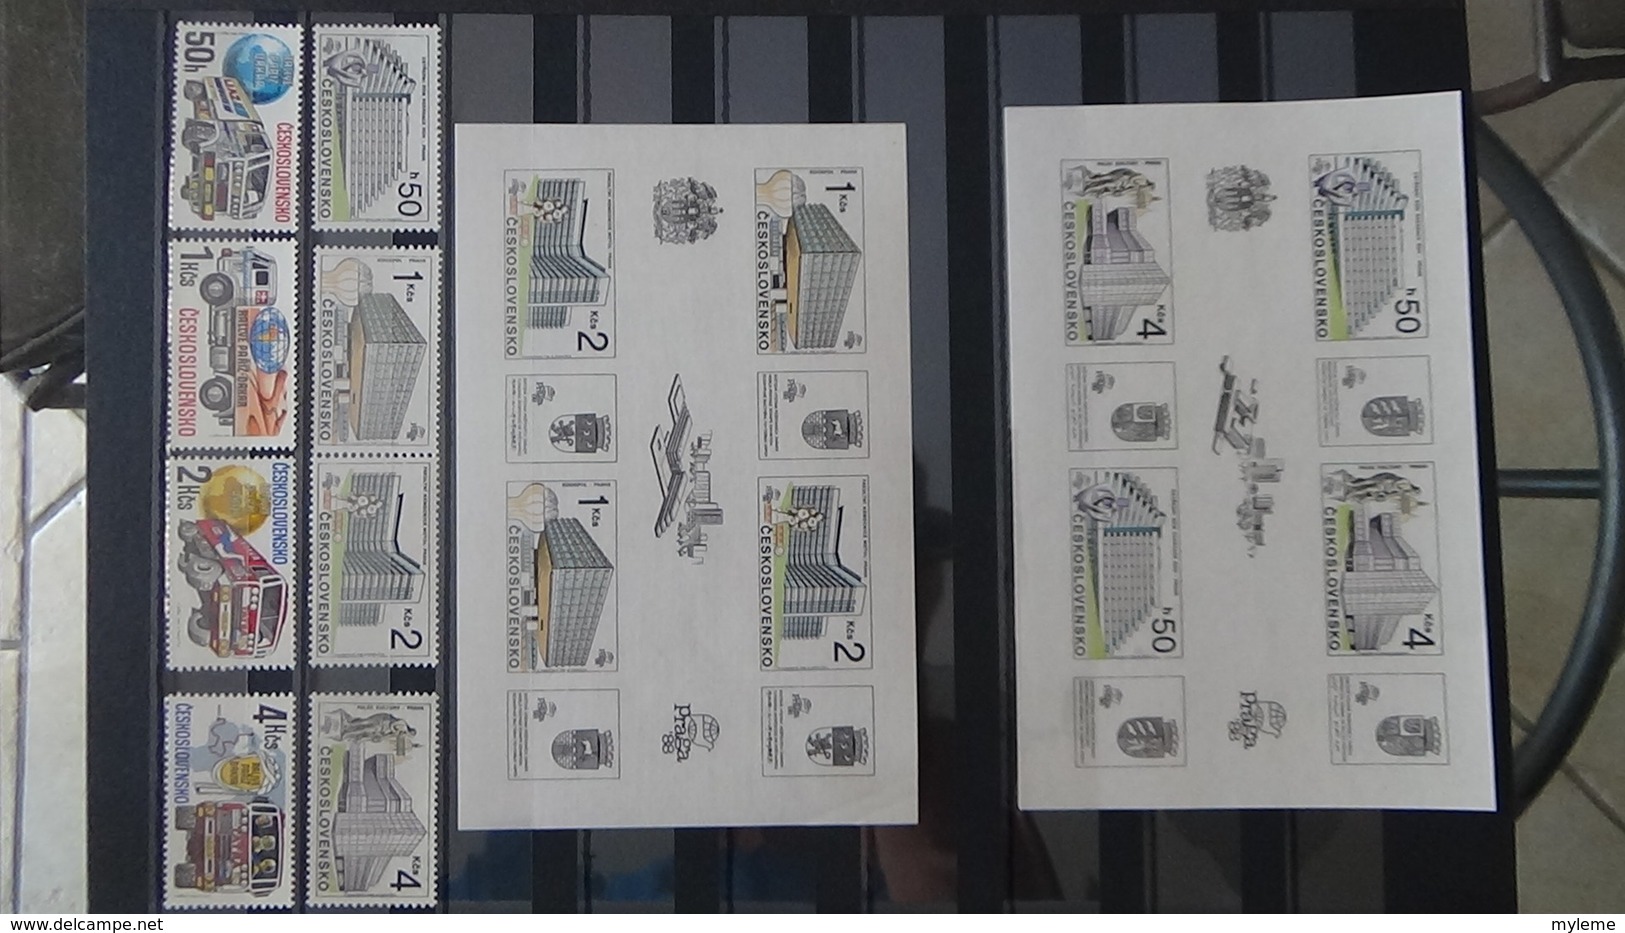 Très belle collection de timbres, blocs et carnets tout est ** de Tchecoslovaquie. Port offert à partir de 50E d'achats